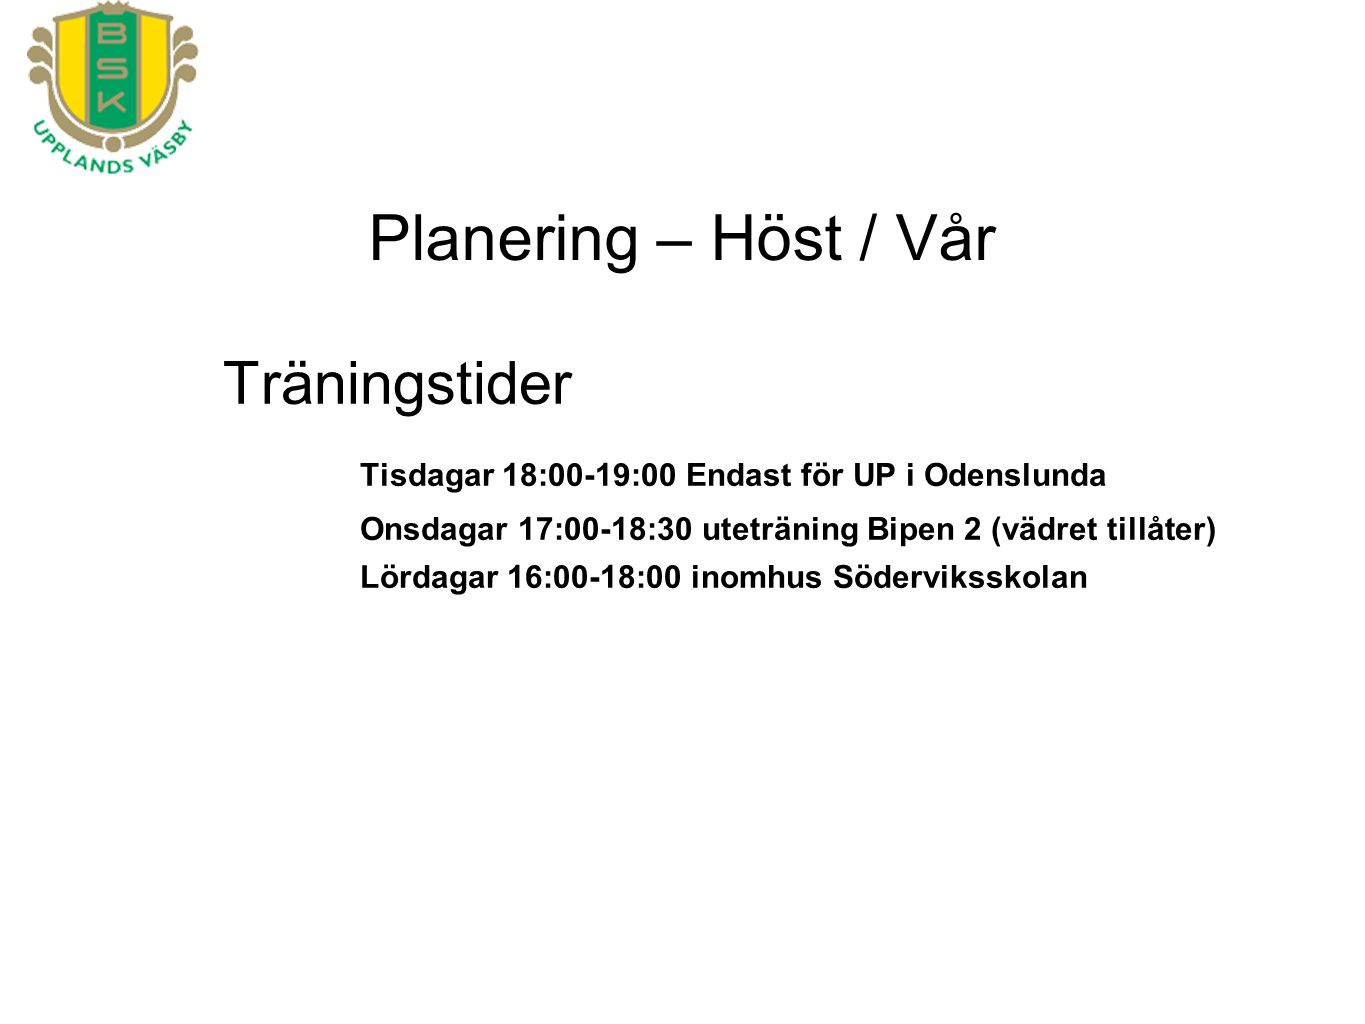 Planering – Höst / Vår Träningstider Tisdagar 18:00-19:00 Endast för UP i Odenslunda Onsdagar 17:00-18:30 uteträning Bipen 2 (vädret tillåter) Lördagar 16:00-18:00 inomhus Söderviksskolan